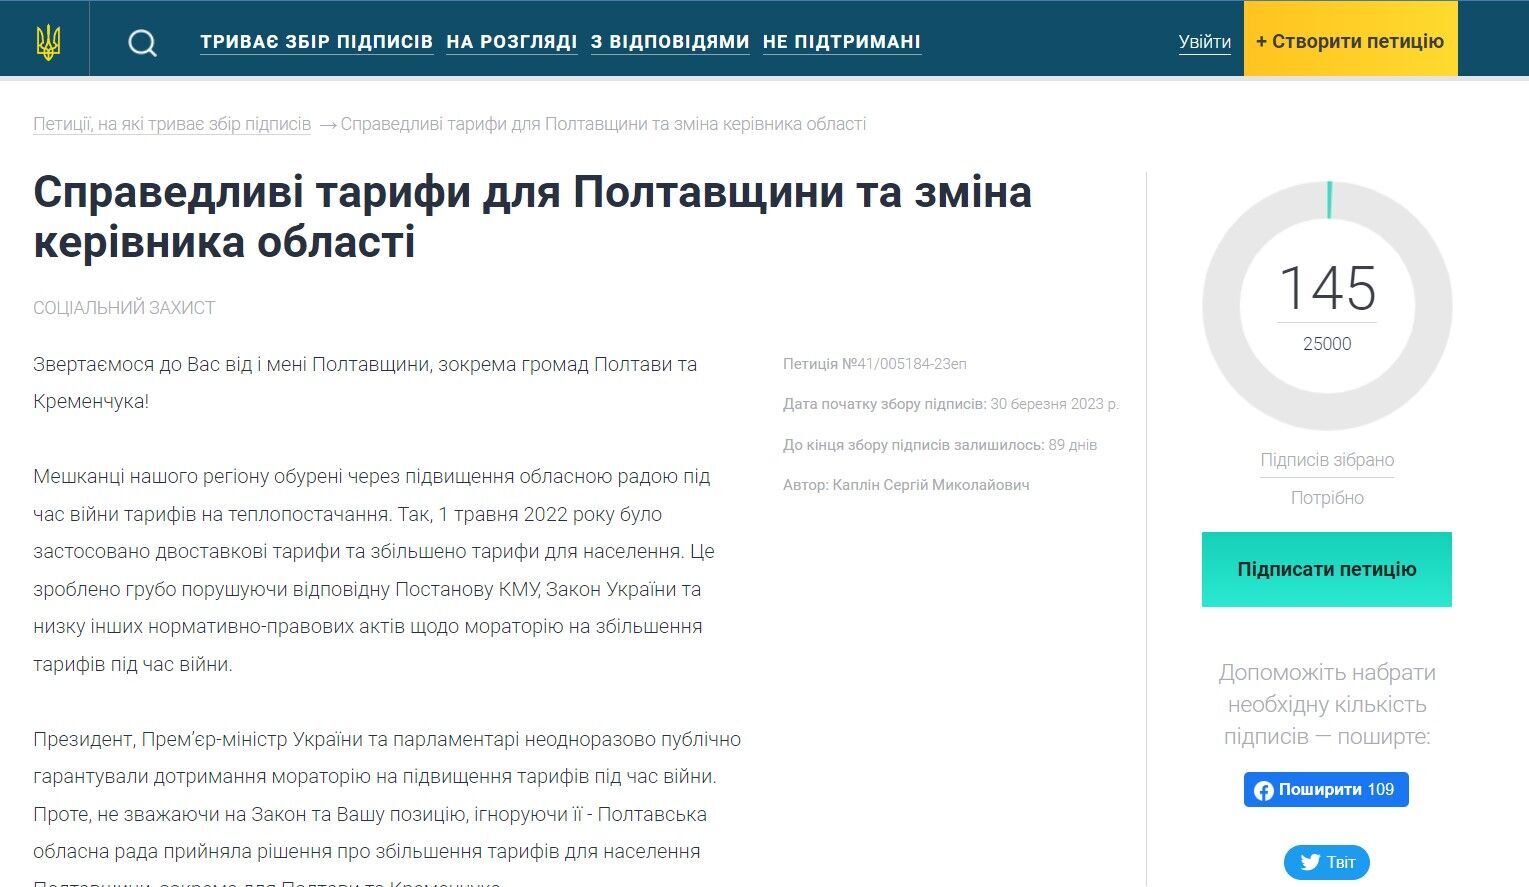 Петиция ''Справедливые тарифы для Полтавщины и смена руководителя области''